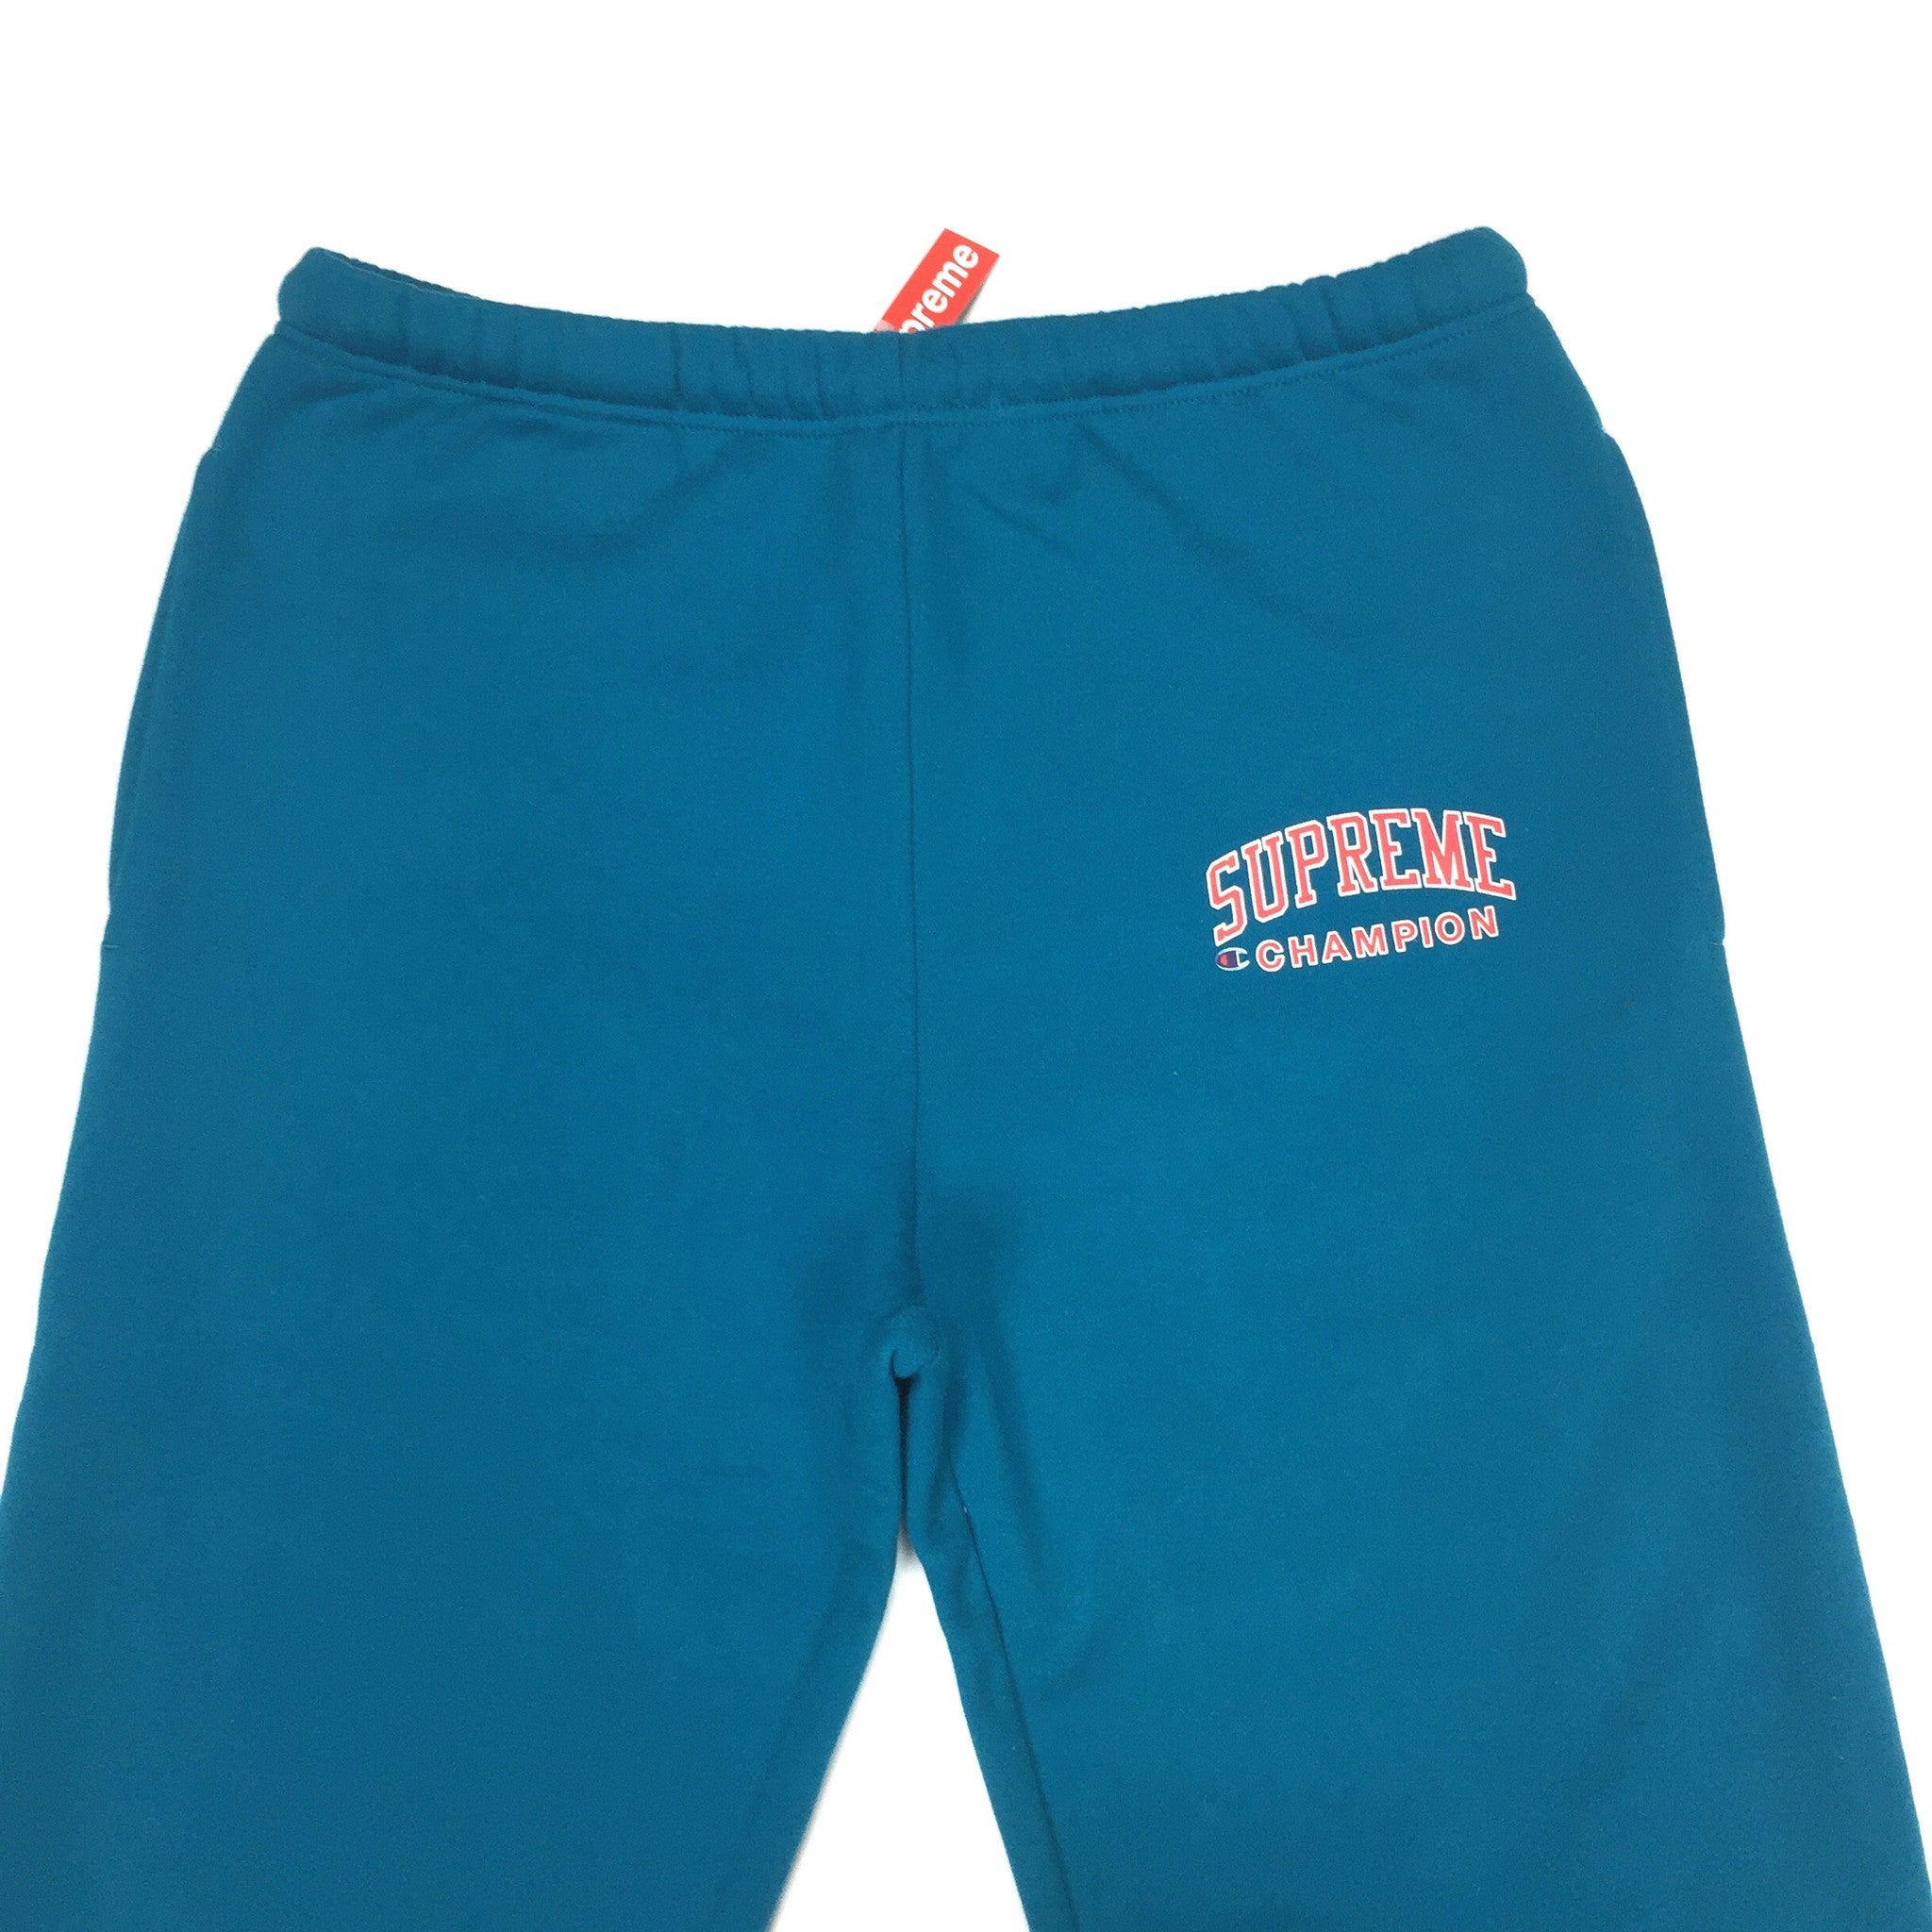 supreme x champion shorts